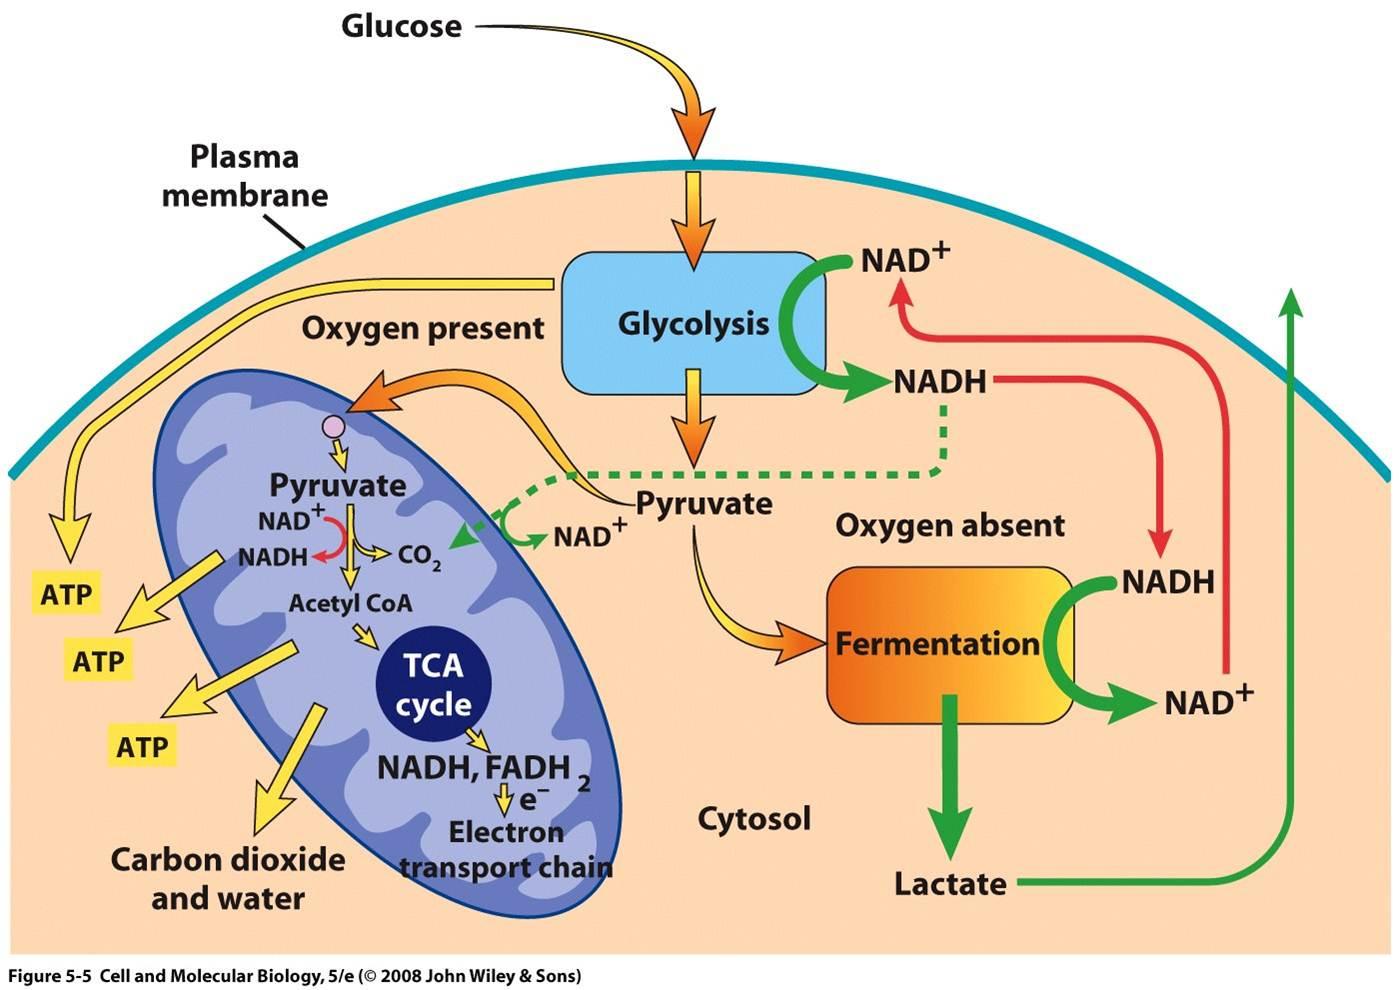 Описание клеточного дыхания. Схема клеточного дыхания цикл Кребса. Цикл Кребса схема в митохондриях. Цикл Кребса происходит в митохондриях. Аэробный процесс в митохондриях.